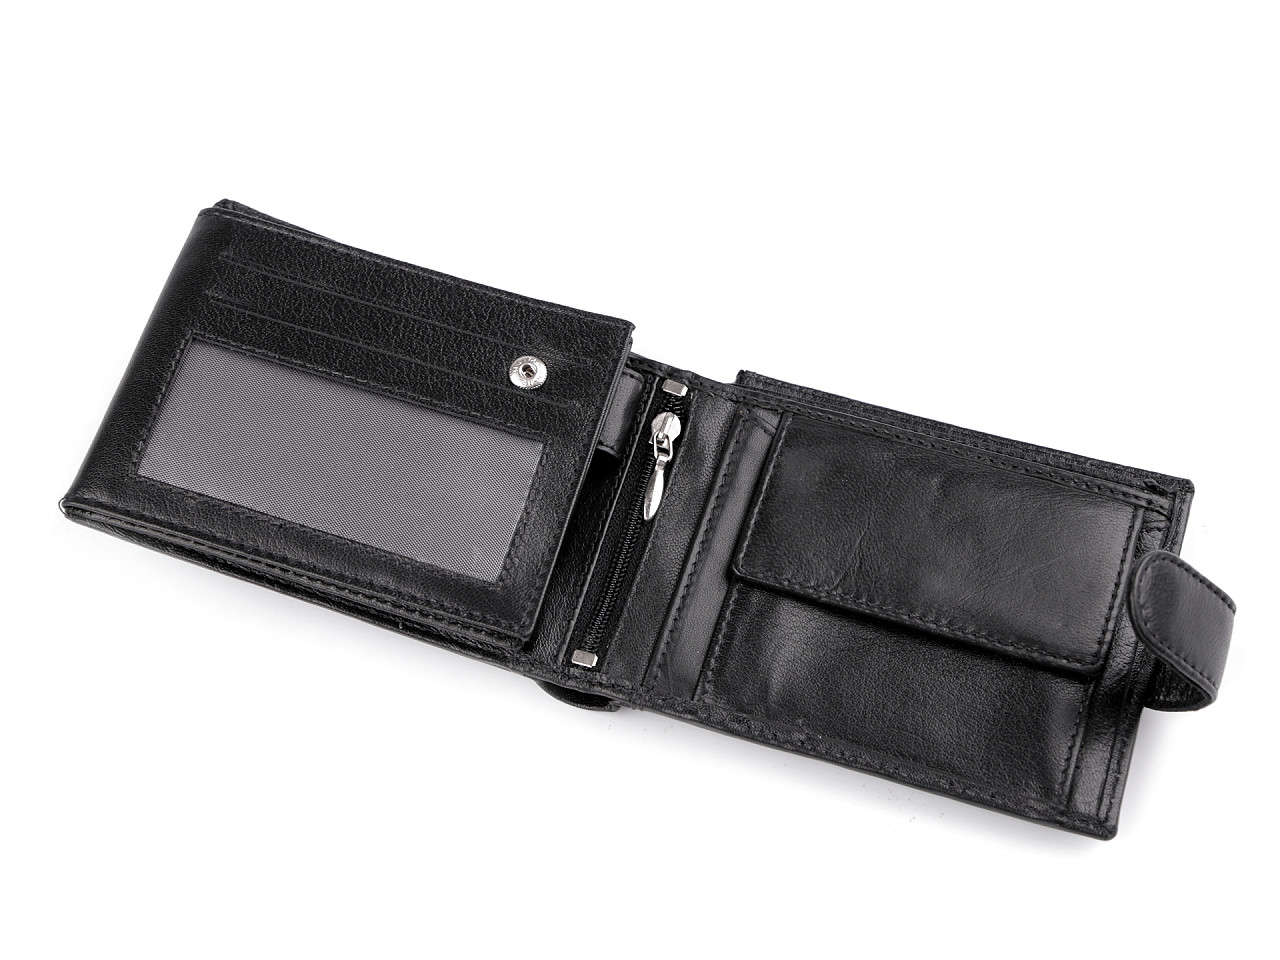 Herren-Geldbörse aus Leder, schwarz, 1 Stück